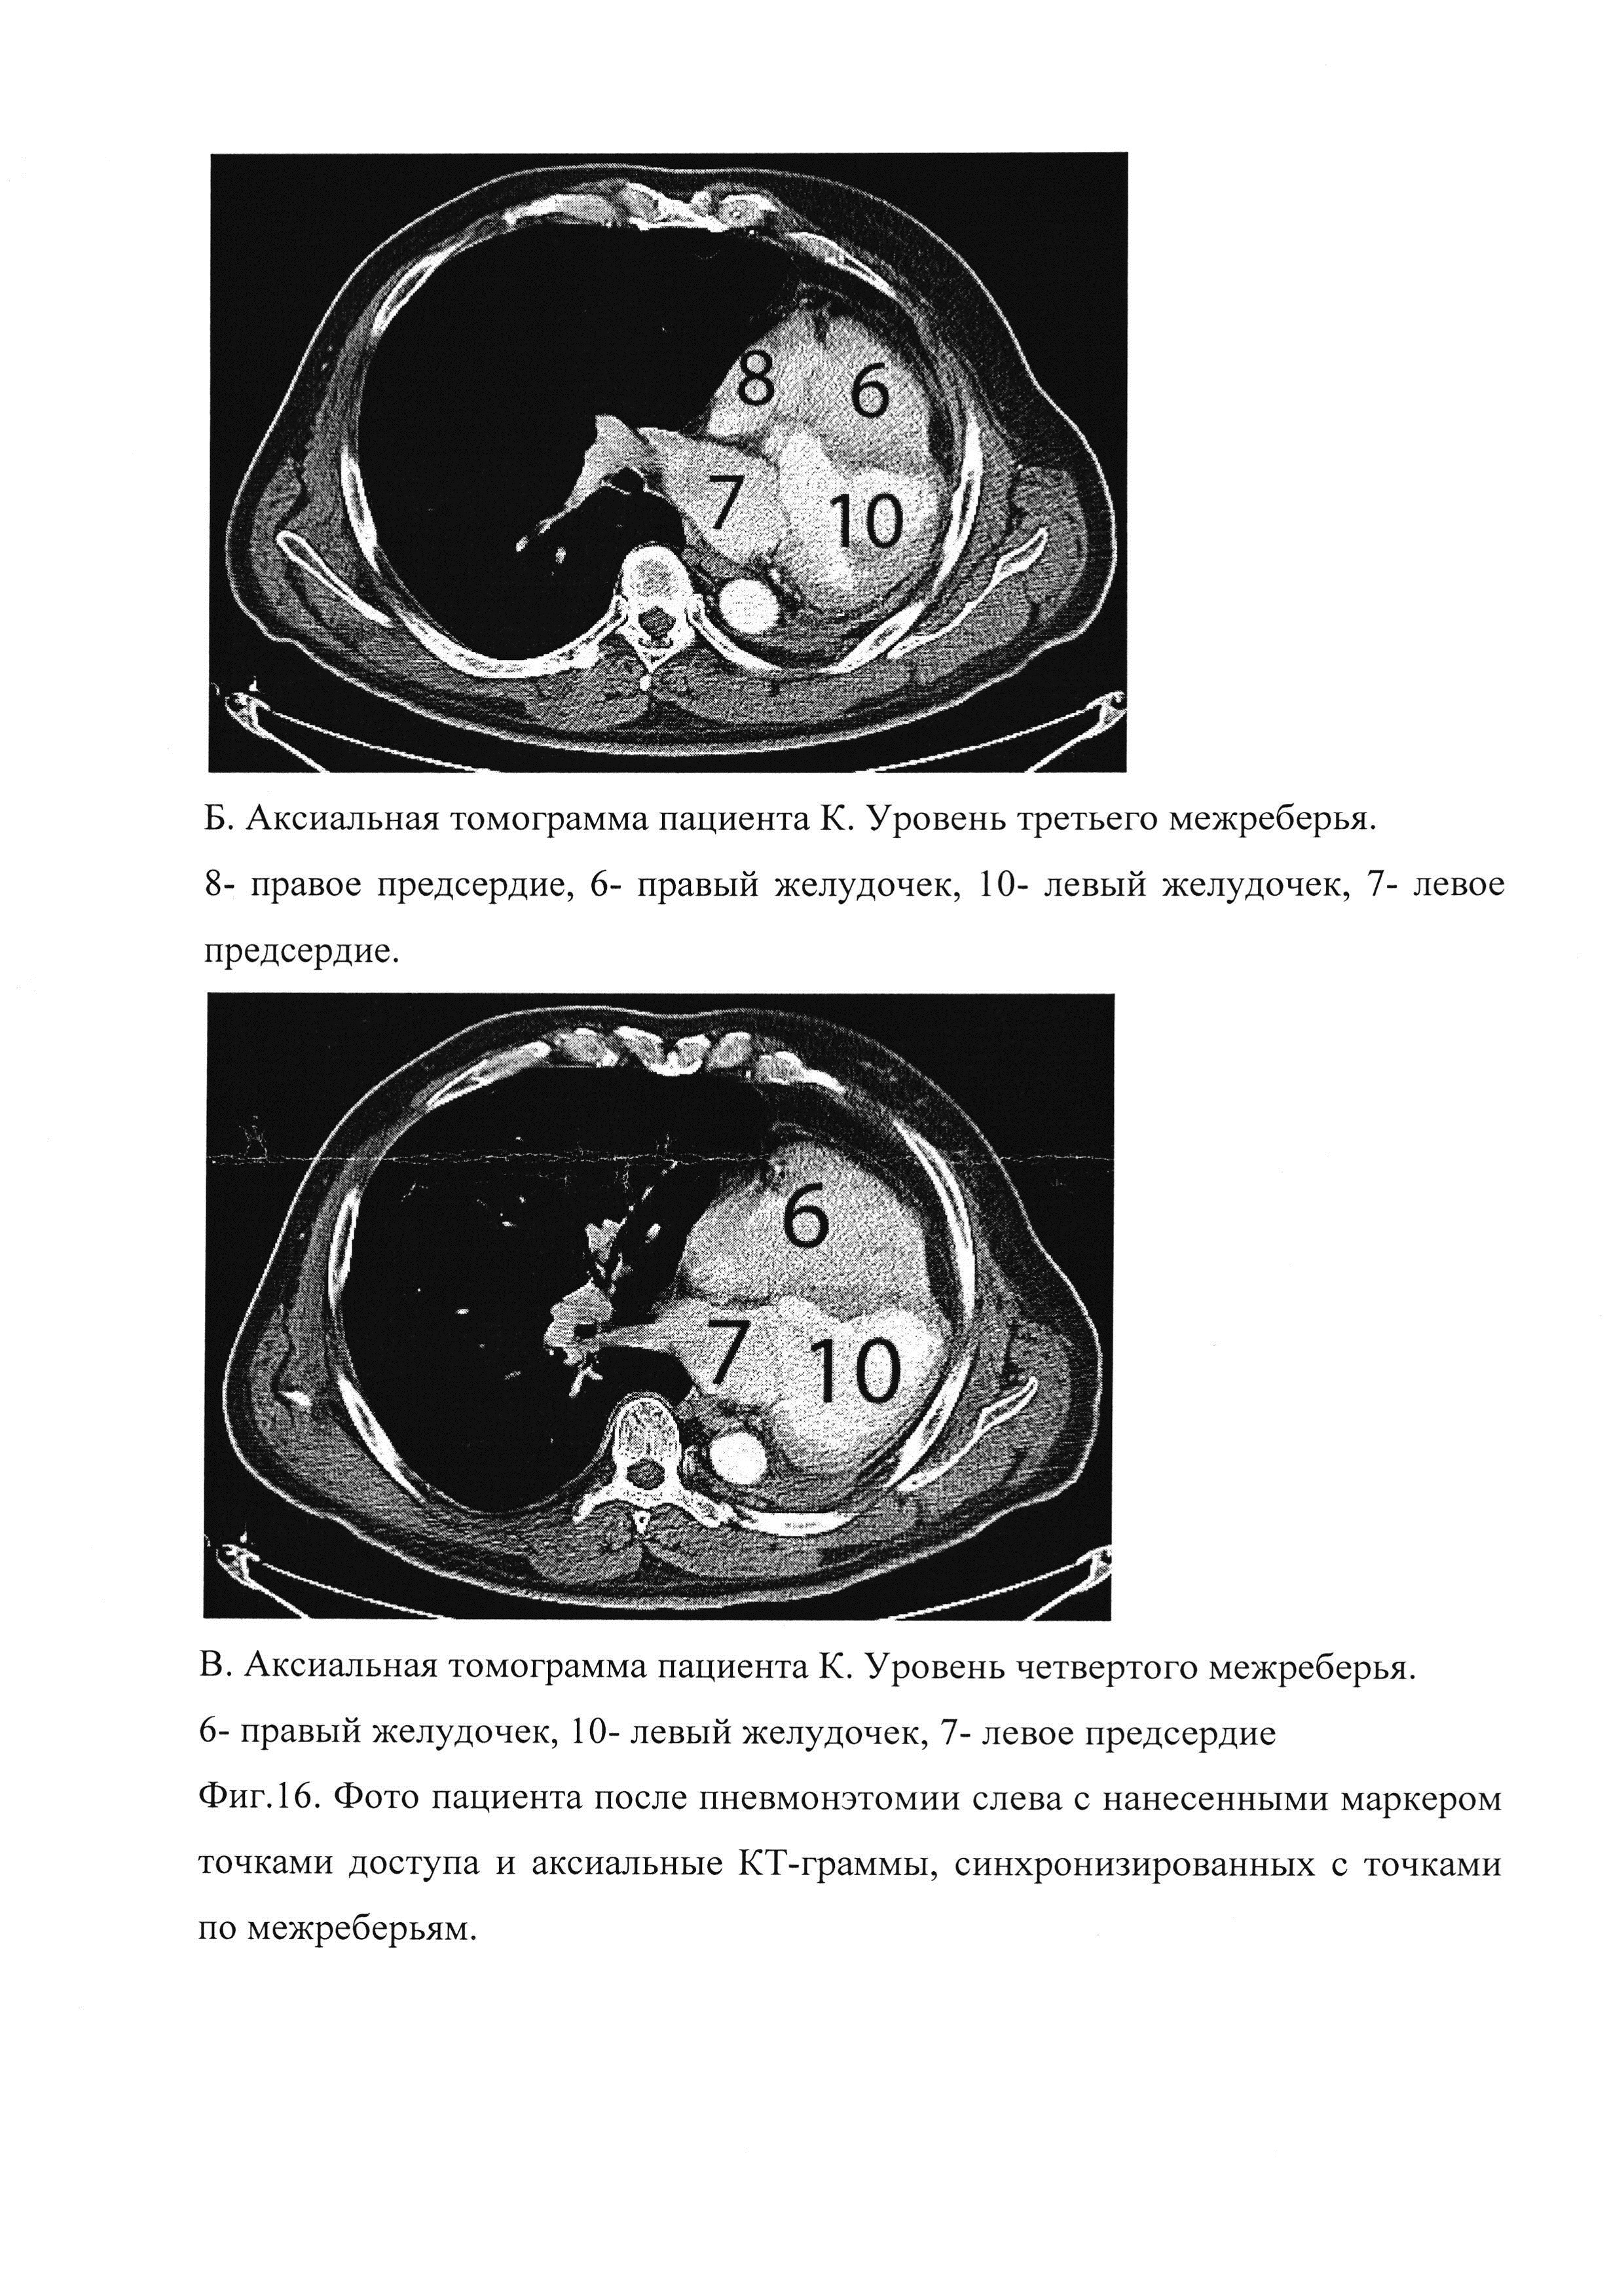 Способ эхокардиографии у пациентов после операции пневмонэктомии в отдаленном периоде